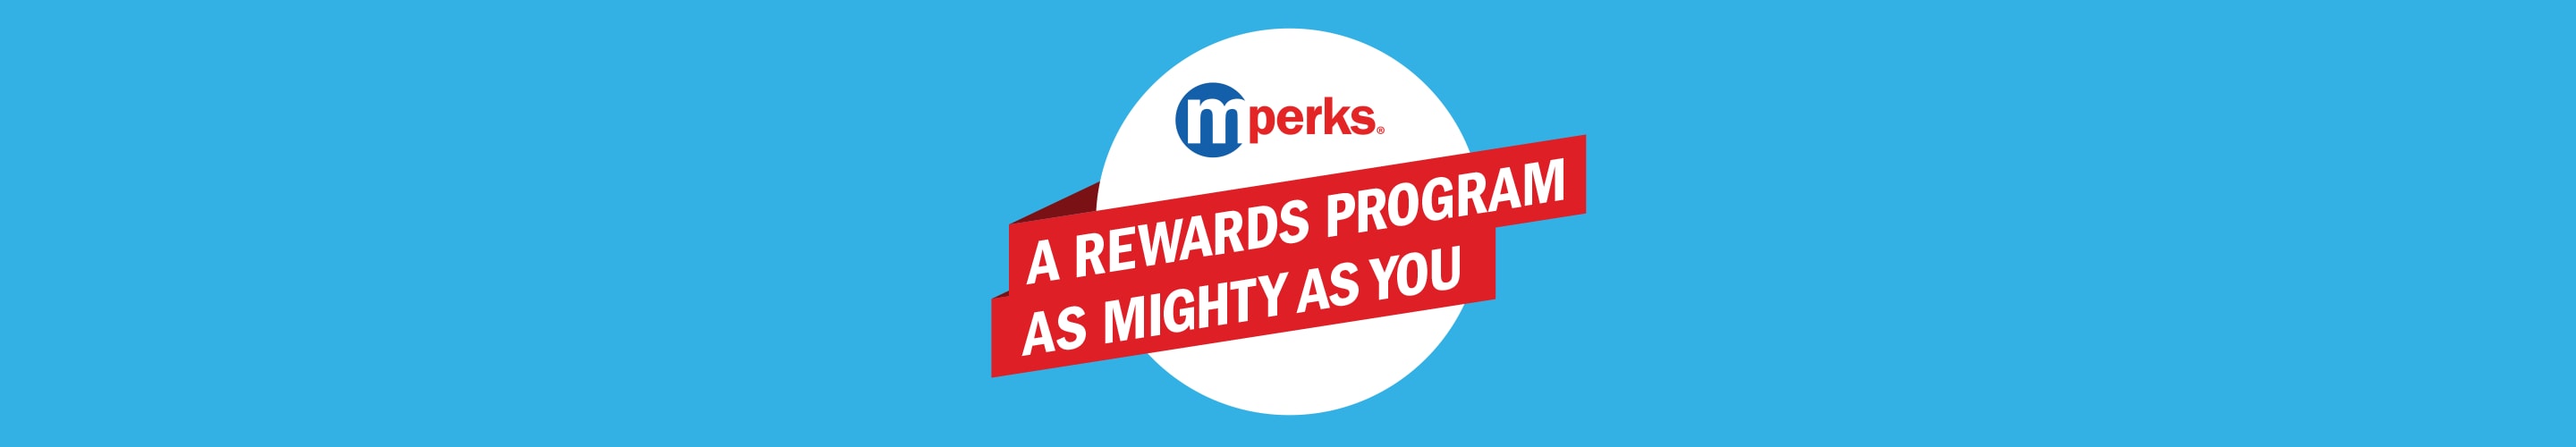 meijer-mperks-meijer-digital-coupons-and-rewards-online-savings